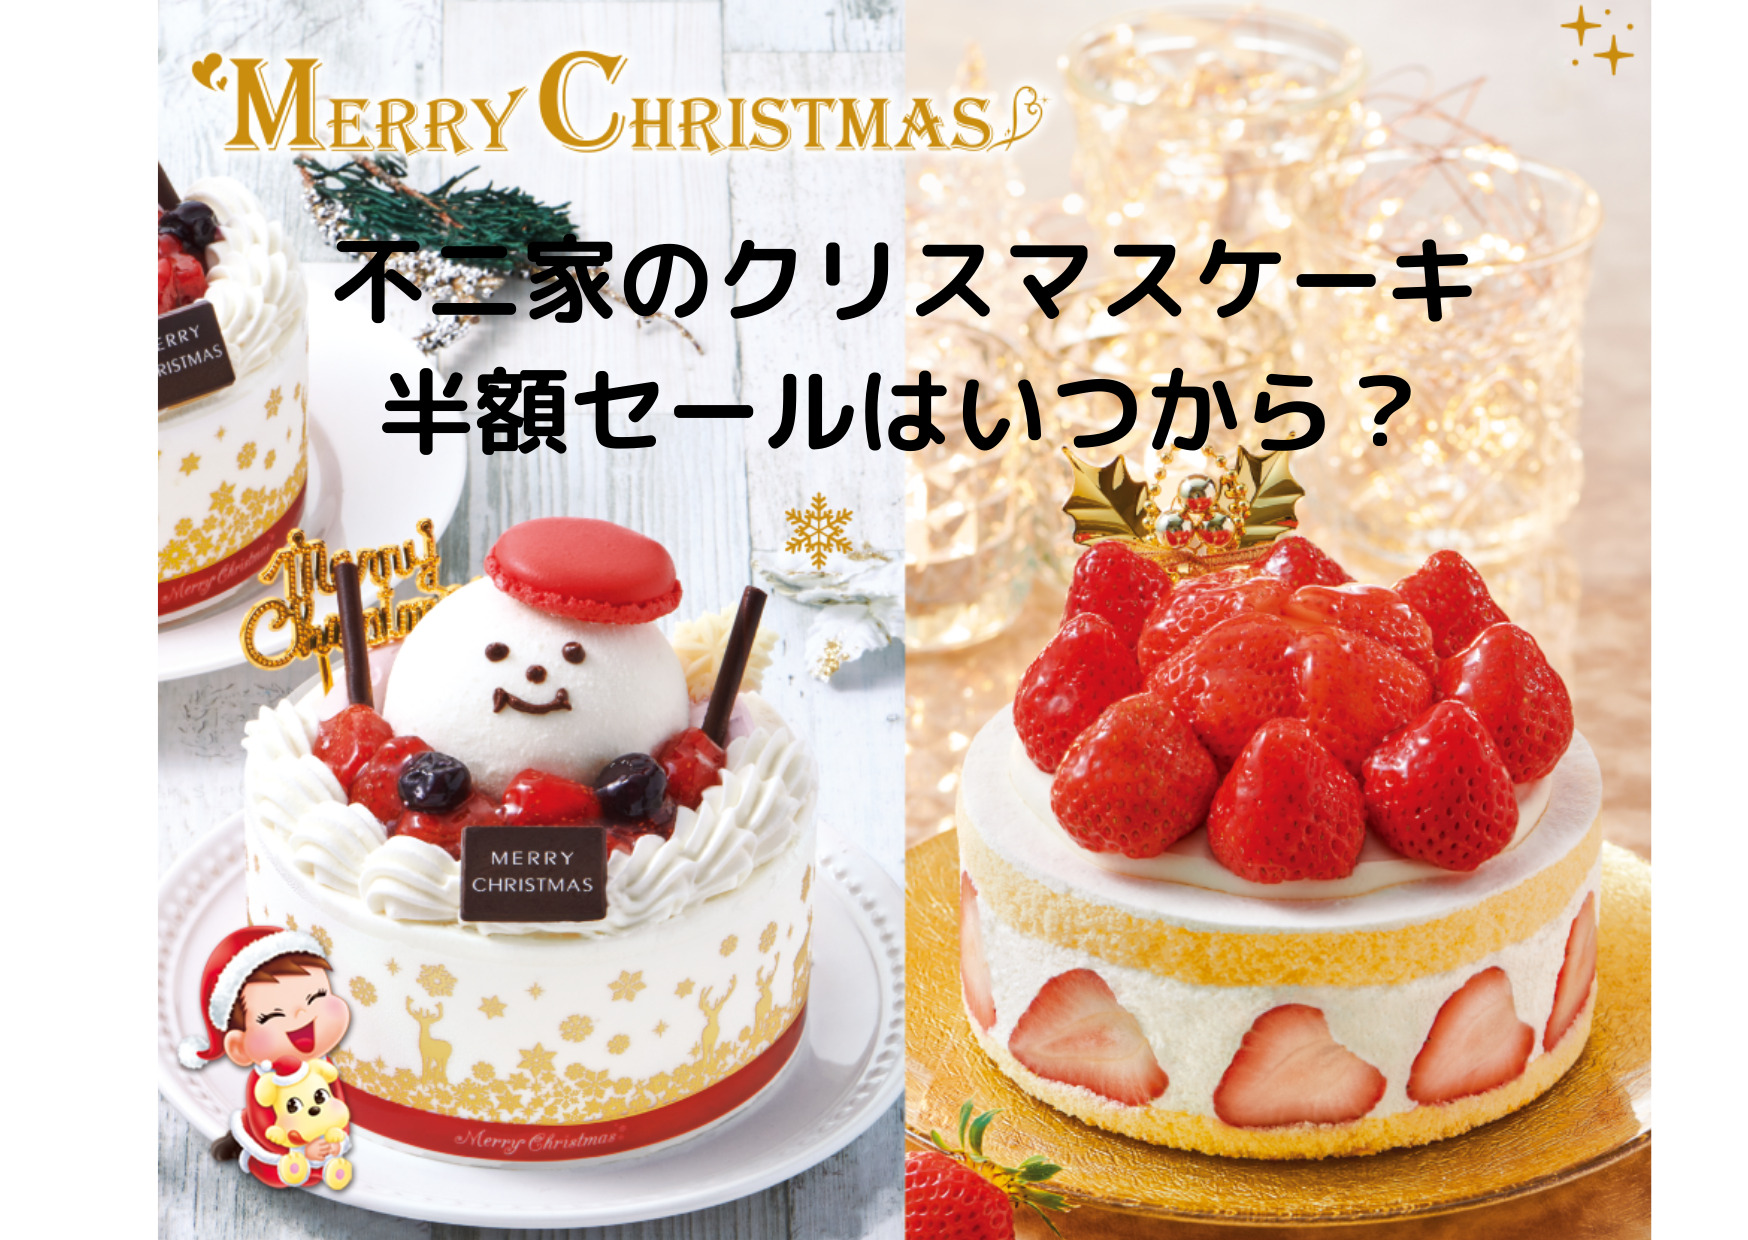 半額 不二家のクリスマスケーキはいつから値下げになる ケーキを安く買うには Kikione情報